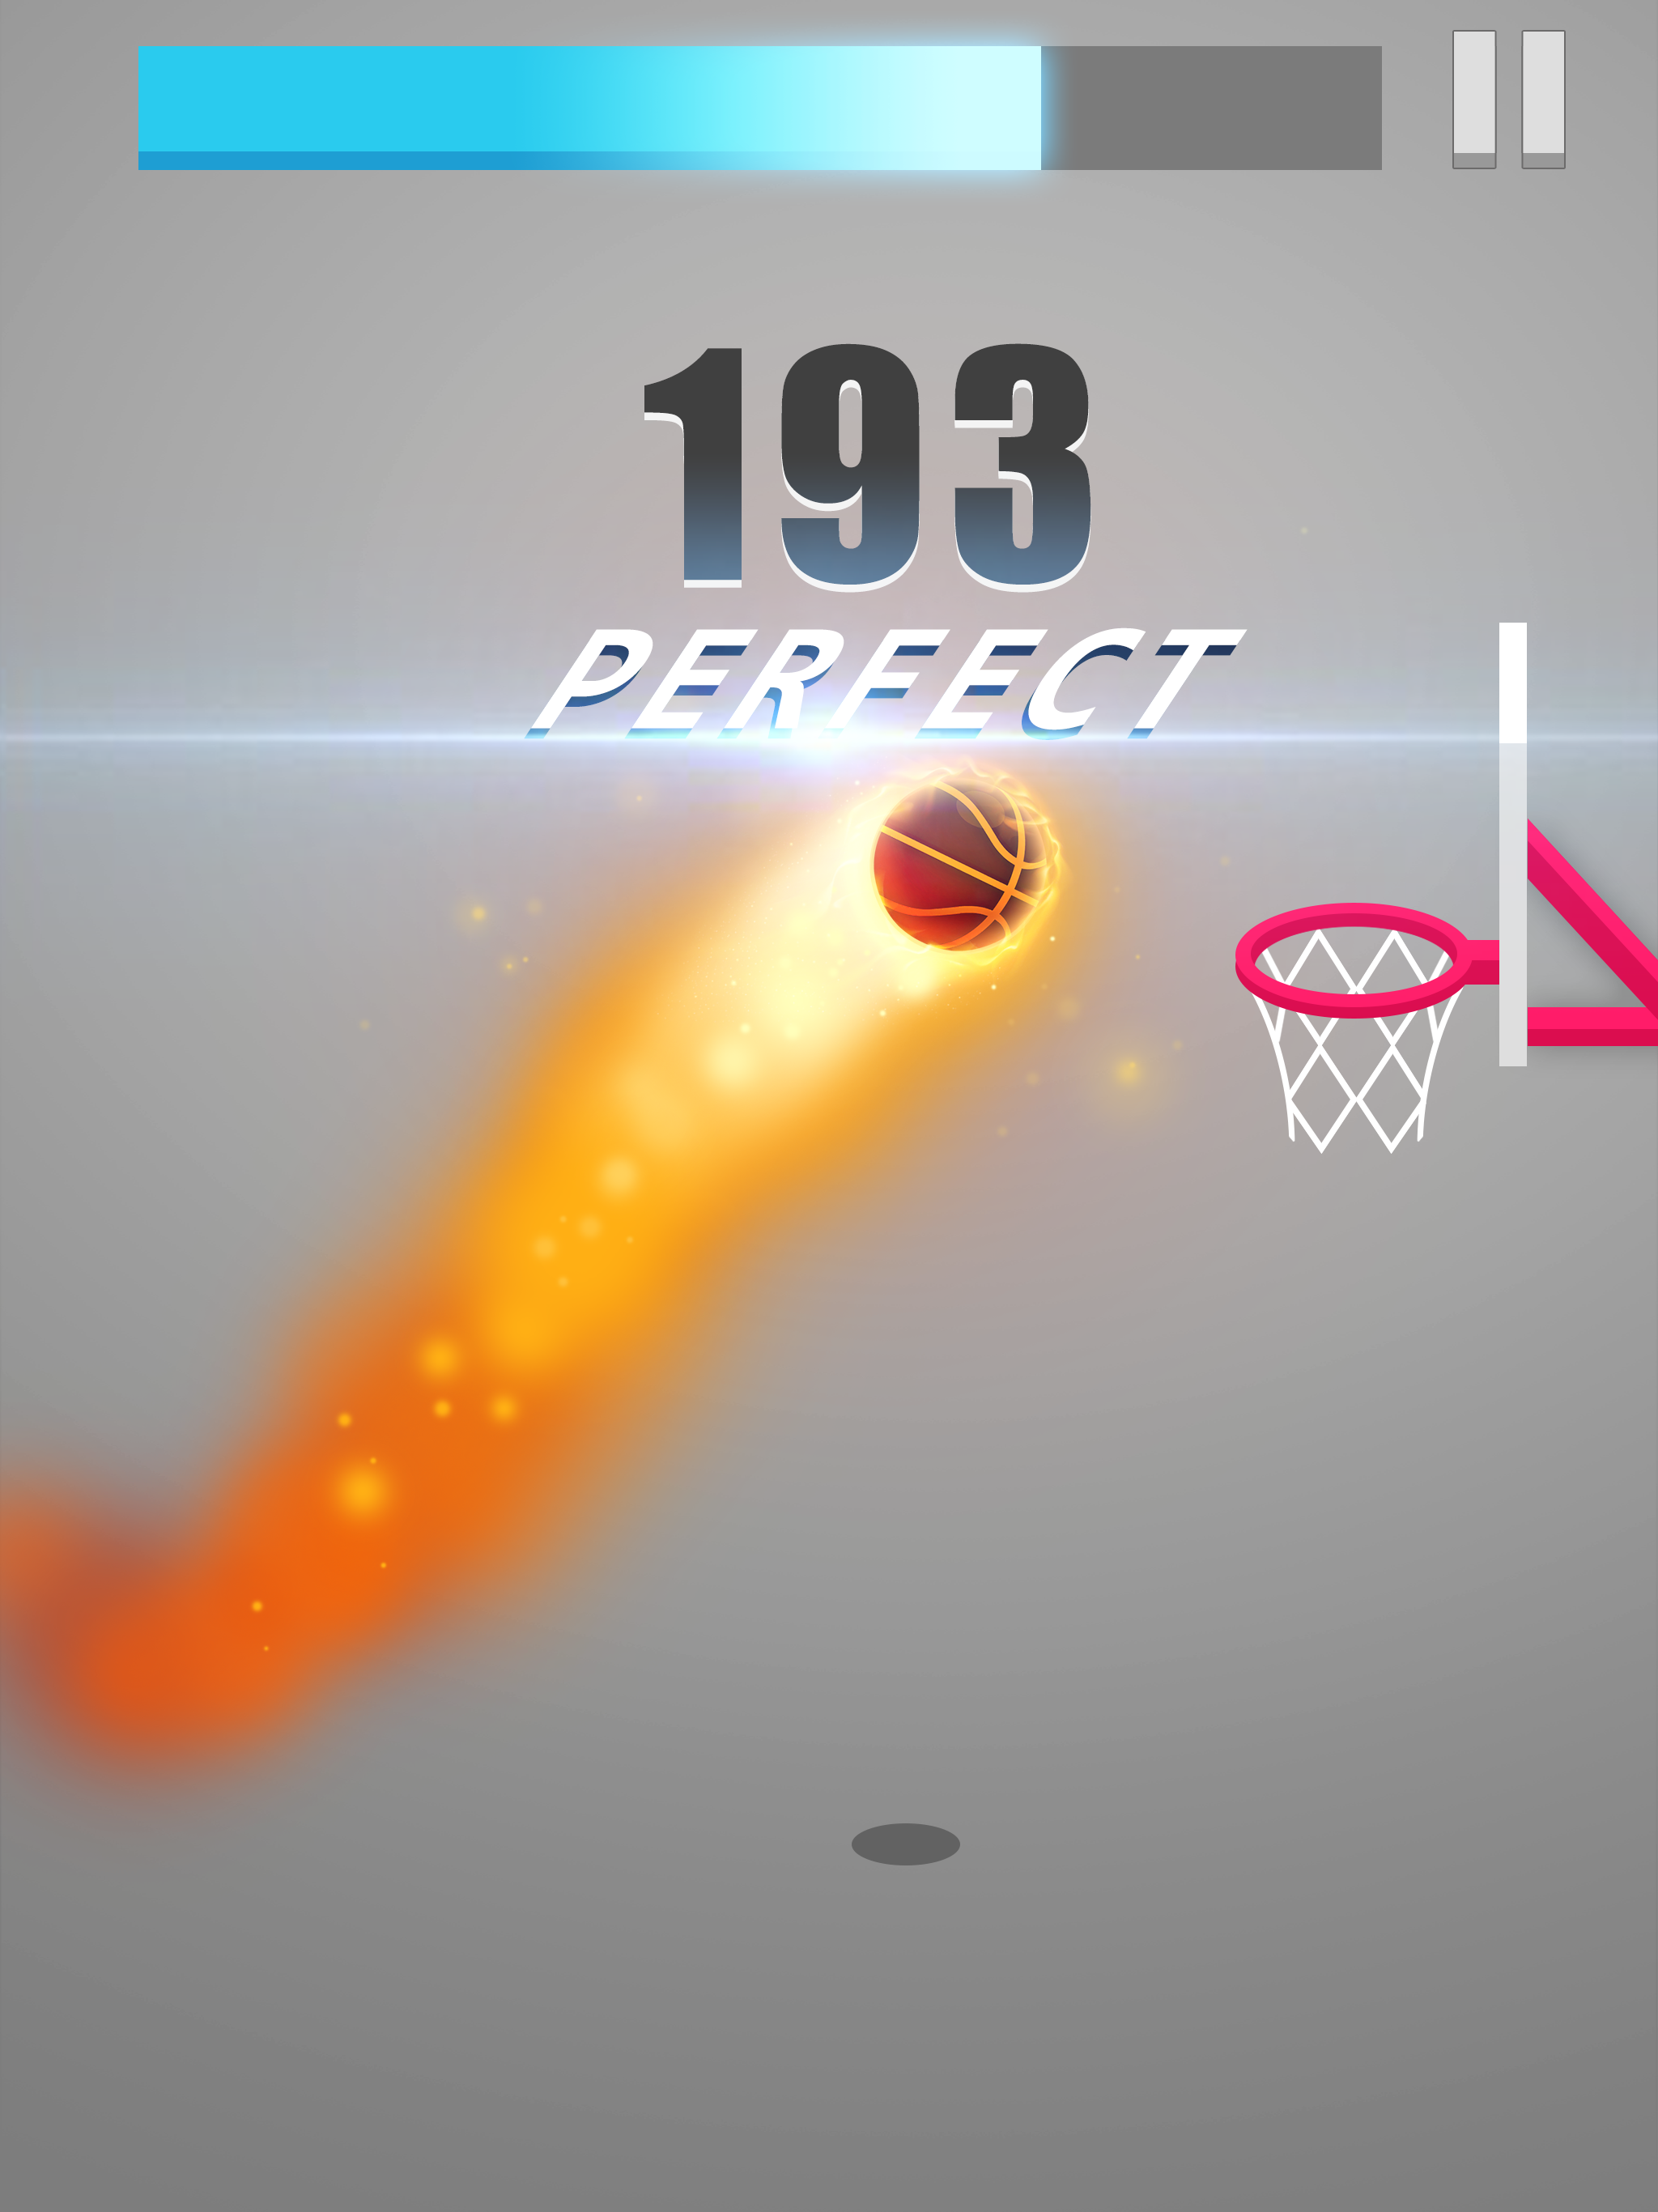  Dunk!Dunk Ball screenshot game